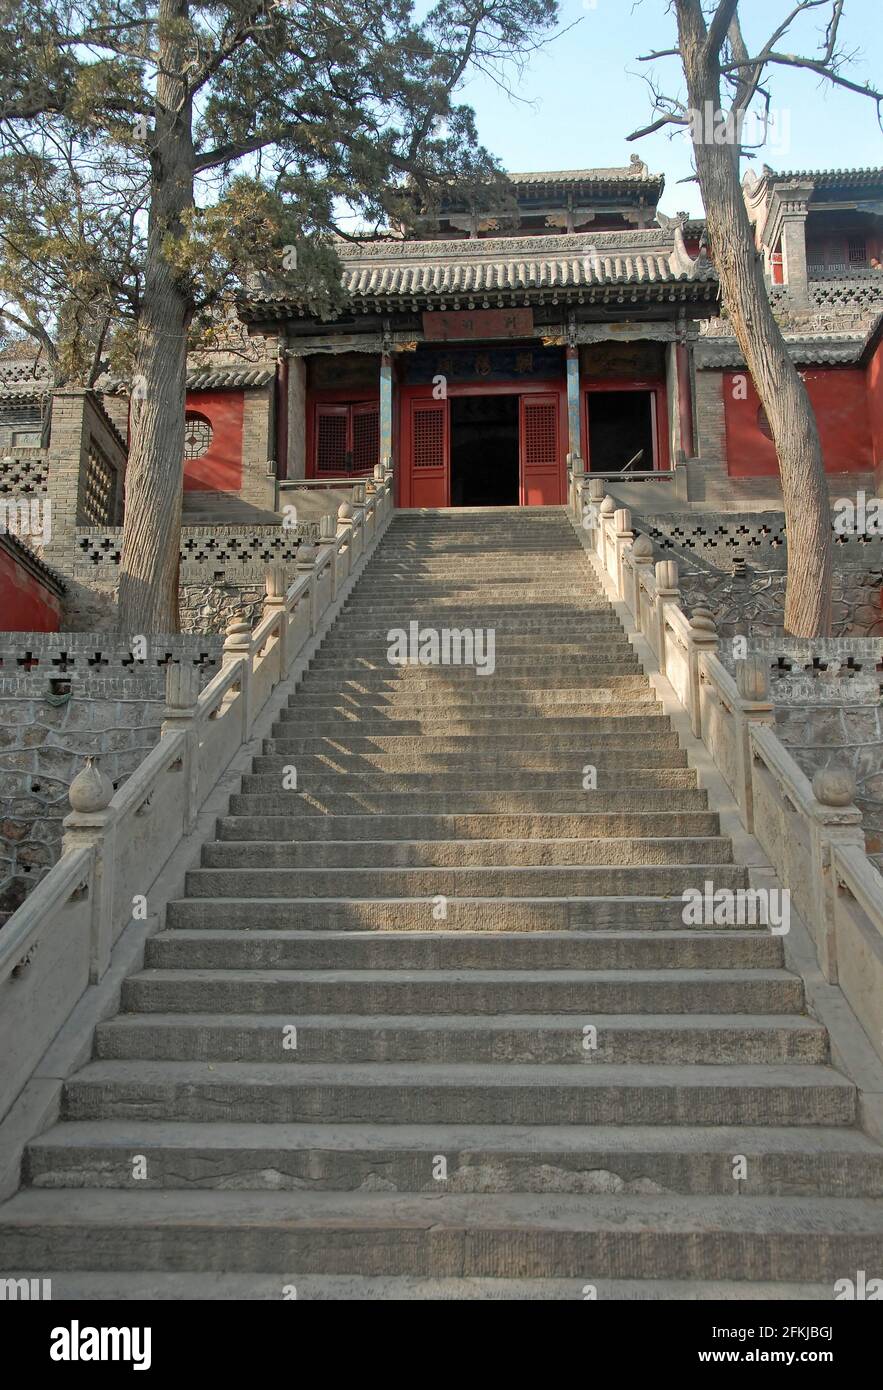 Temple Jinci près de Taiyuan, Shanxi, Chine. Un escalier en pierre menant à un bâtiment dans le domaine du temple de Jinci. Banque D'Images